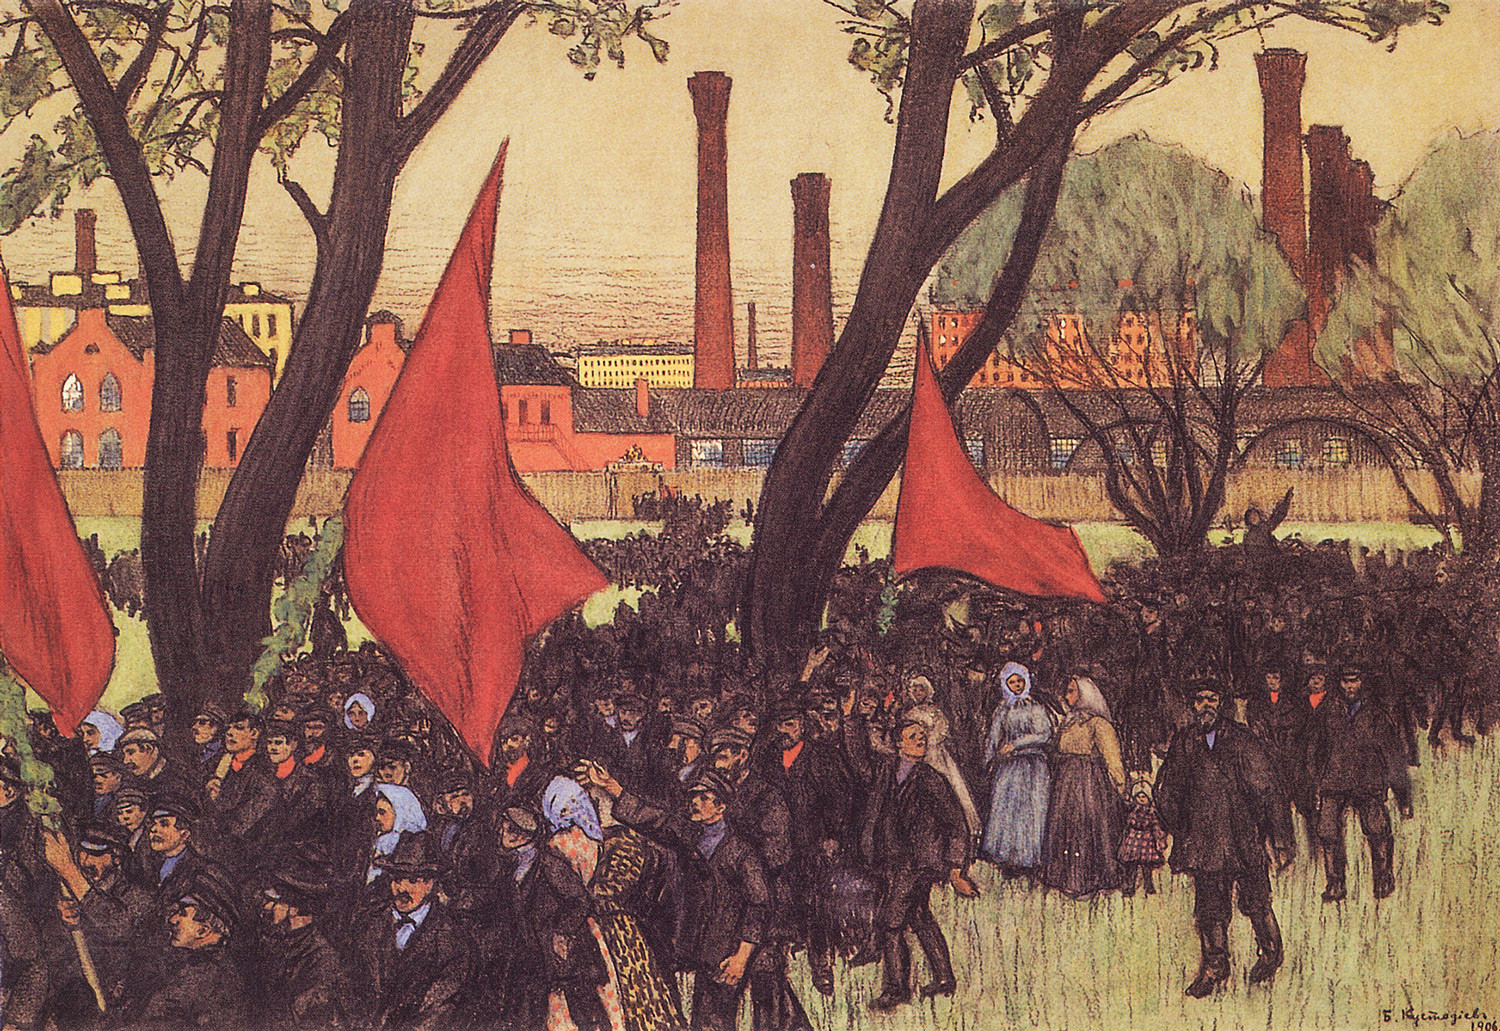 Prvomajska demonstracija v Putilovski tovarni, 1906